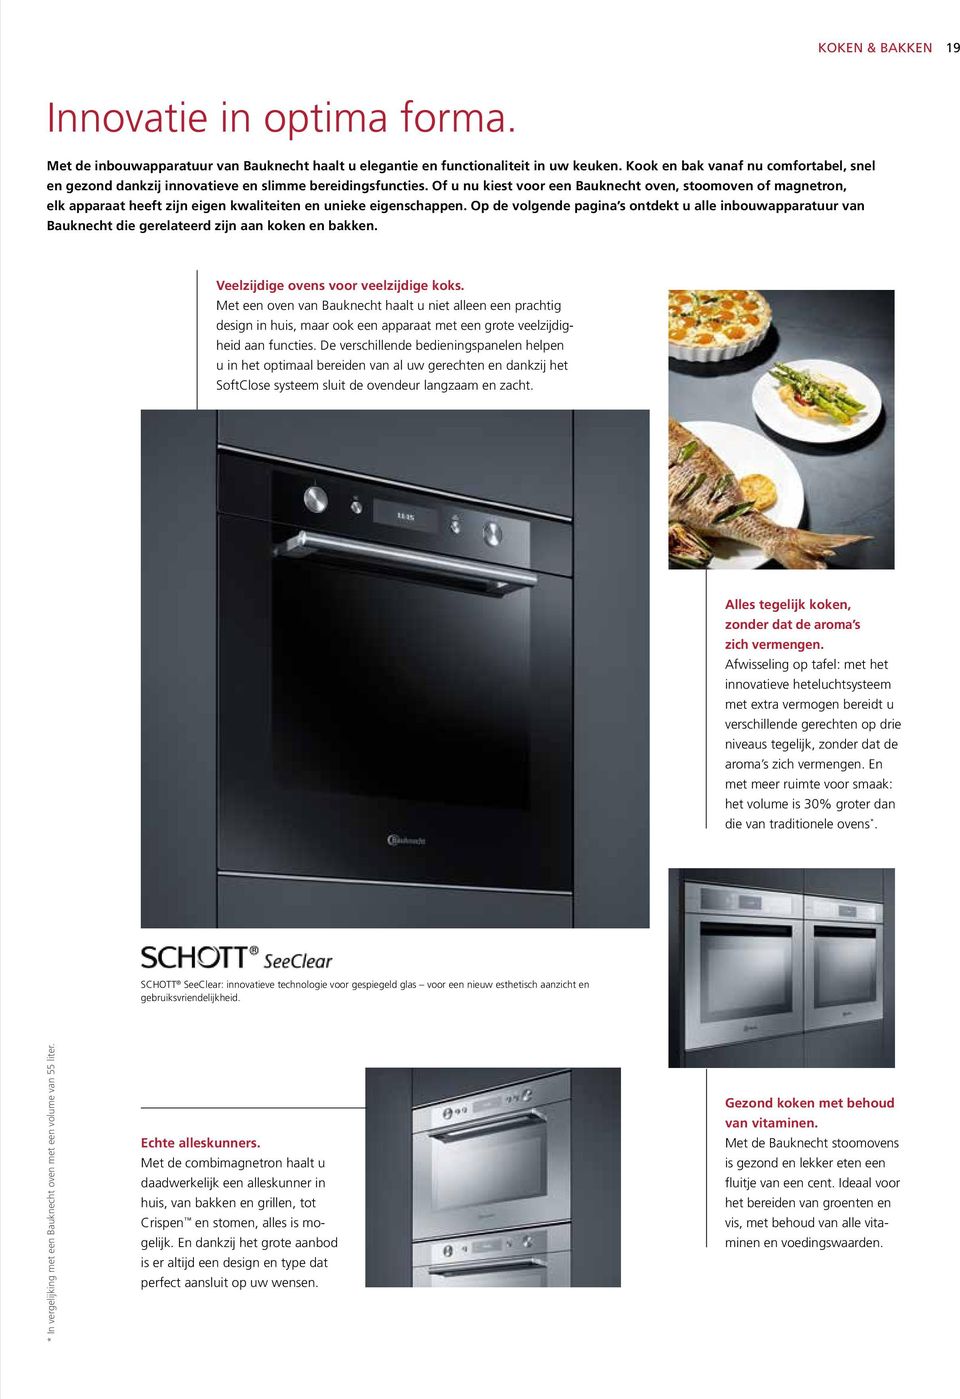 Of u nu kiest voor een Bauknecht oven, stoomoven of magnetron, elk apparaat heeft zijn eigen kwaliteiten en unieke eigenschappen.